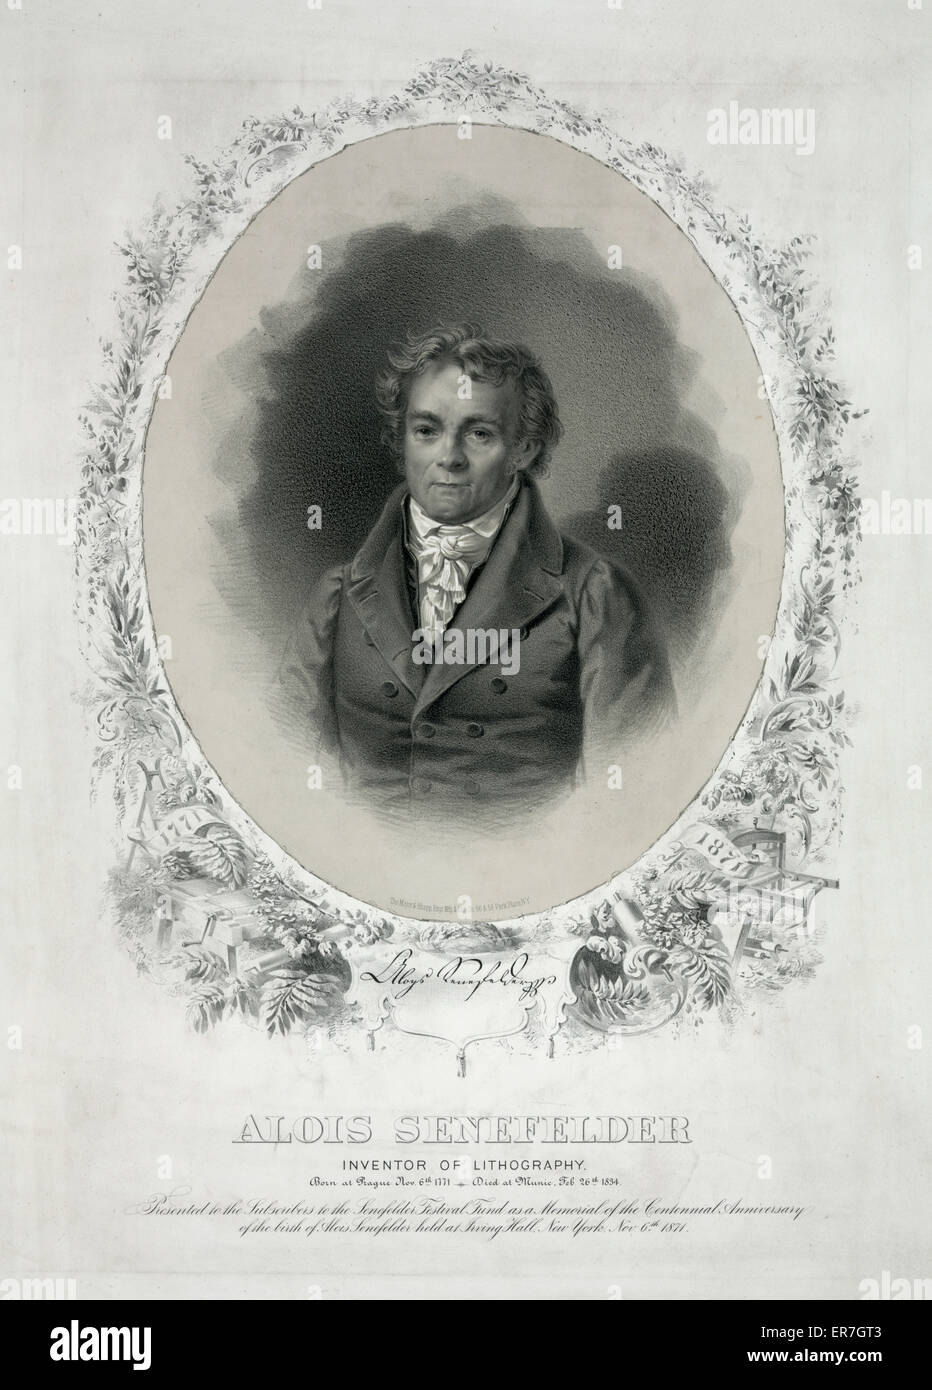 Alois Senefelder inventor de la litografía Foto de stock